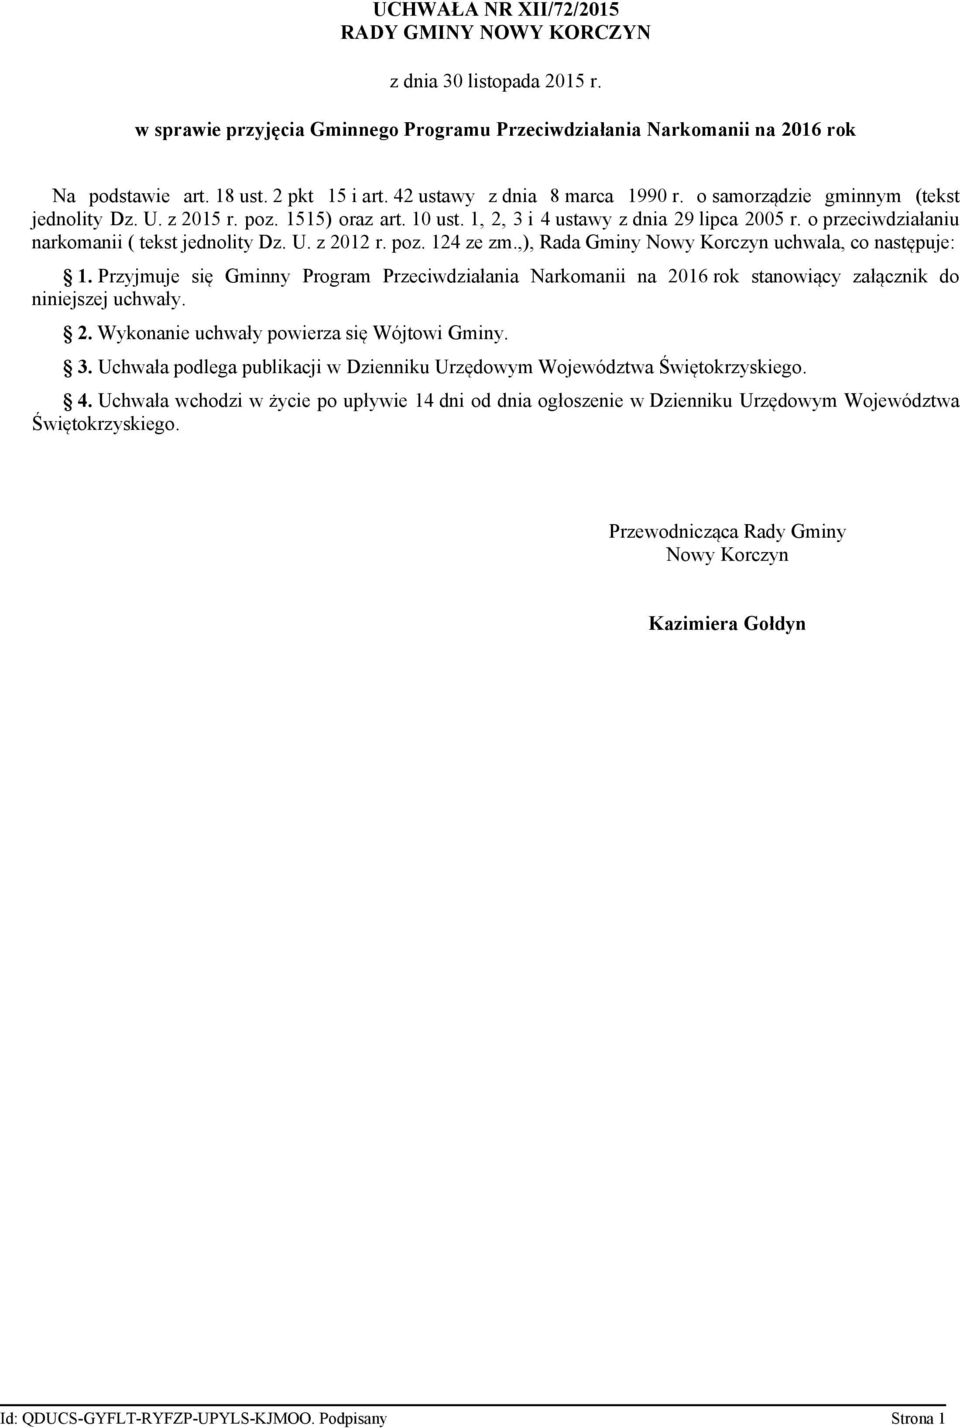 o przeciwdziałaniu narkomanii ( tekst jednolity Dz. U. z 2012 r. poz. 124 ze zm.,), Rada Gminy Nowy Korczyn uchwala, co następuje: 1.